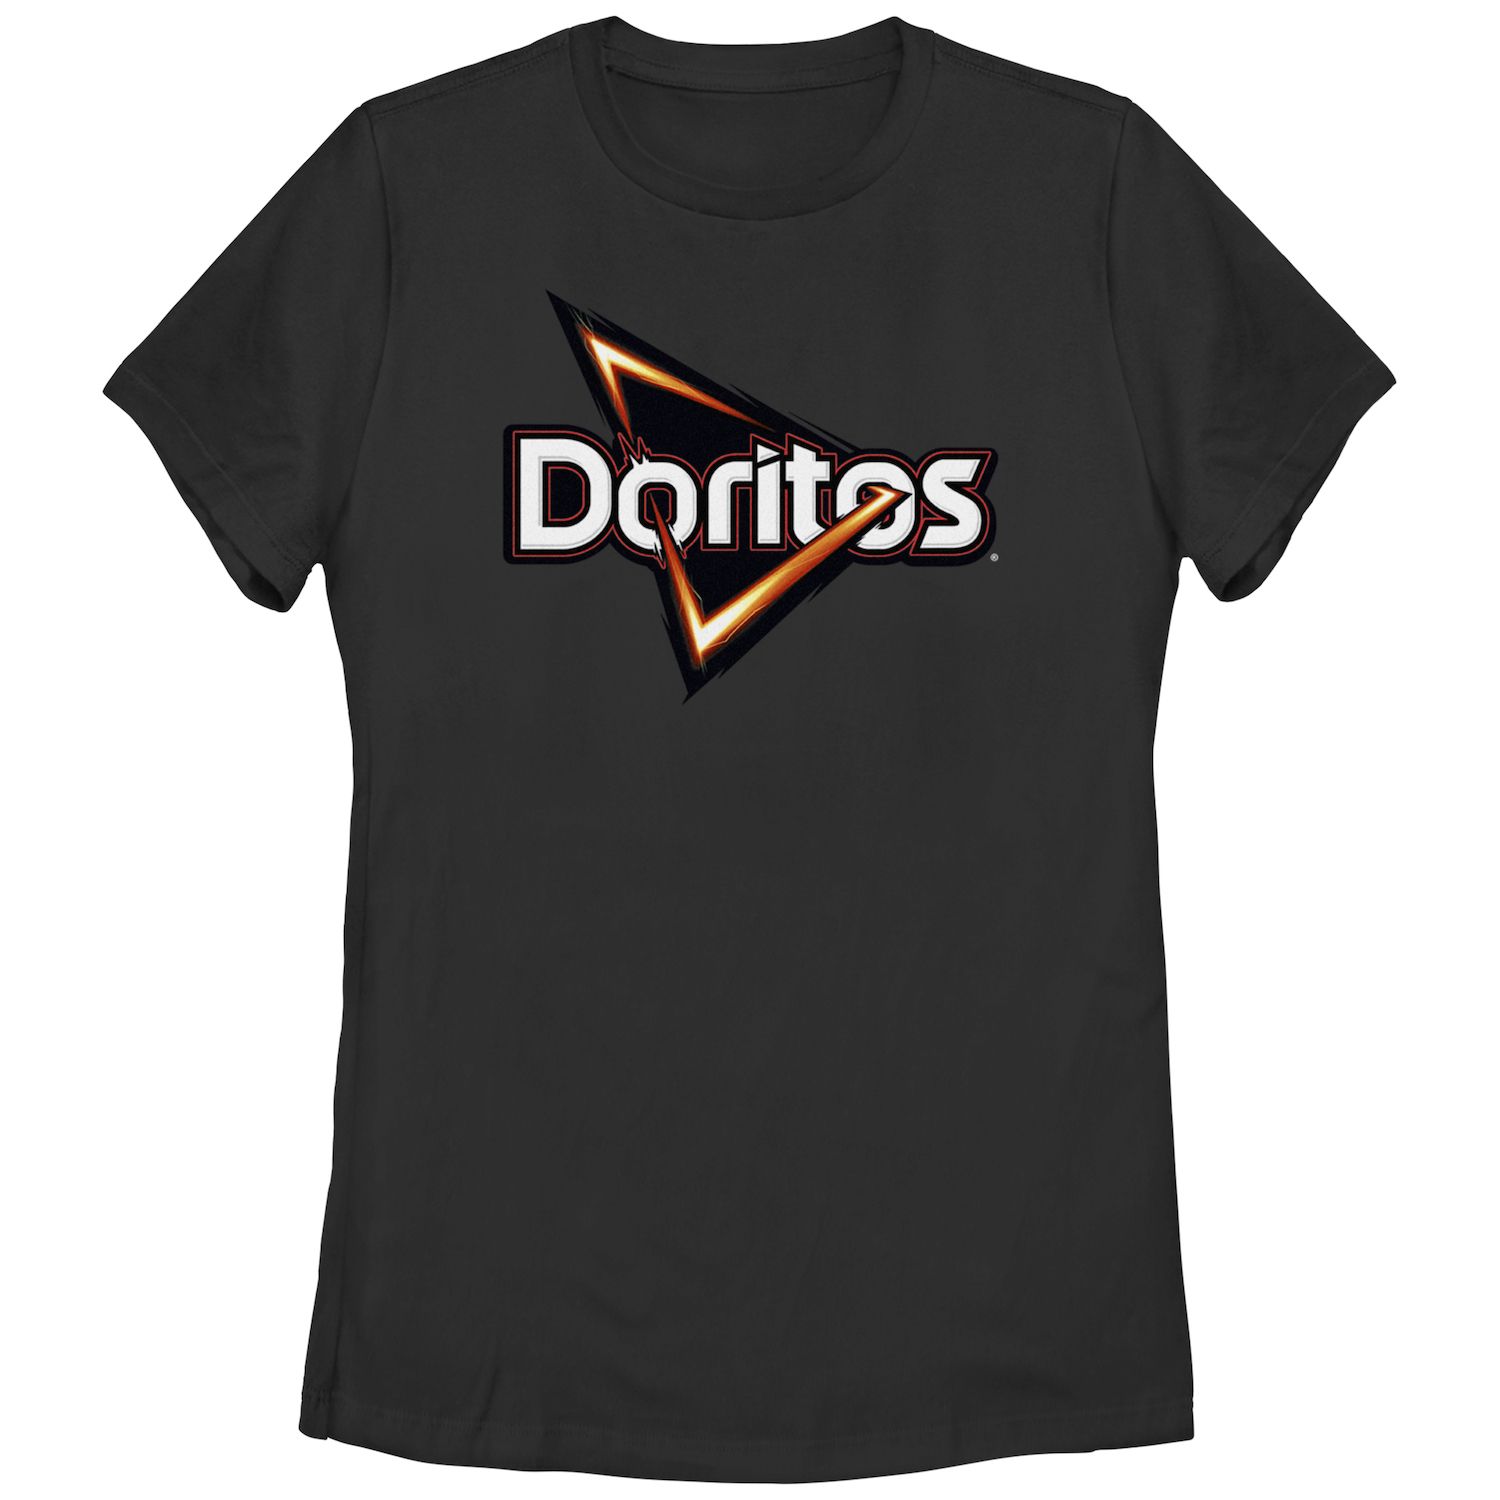 Классическая футболка с логотипом и графическим рисунком Doritos Triangle Chips для юниоров Doritos